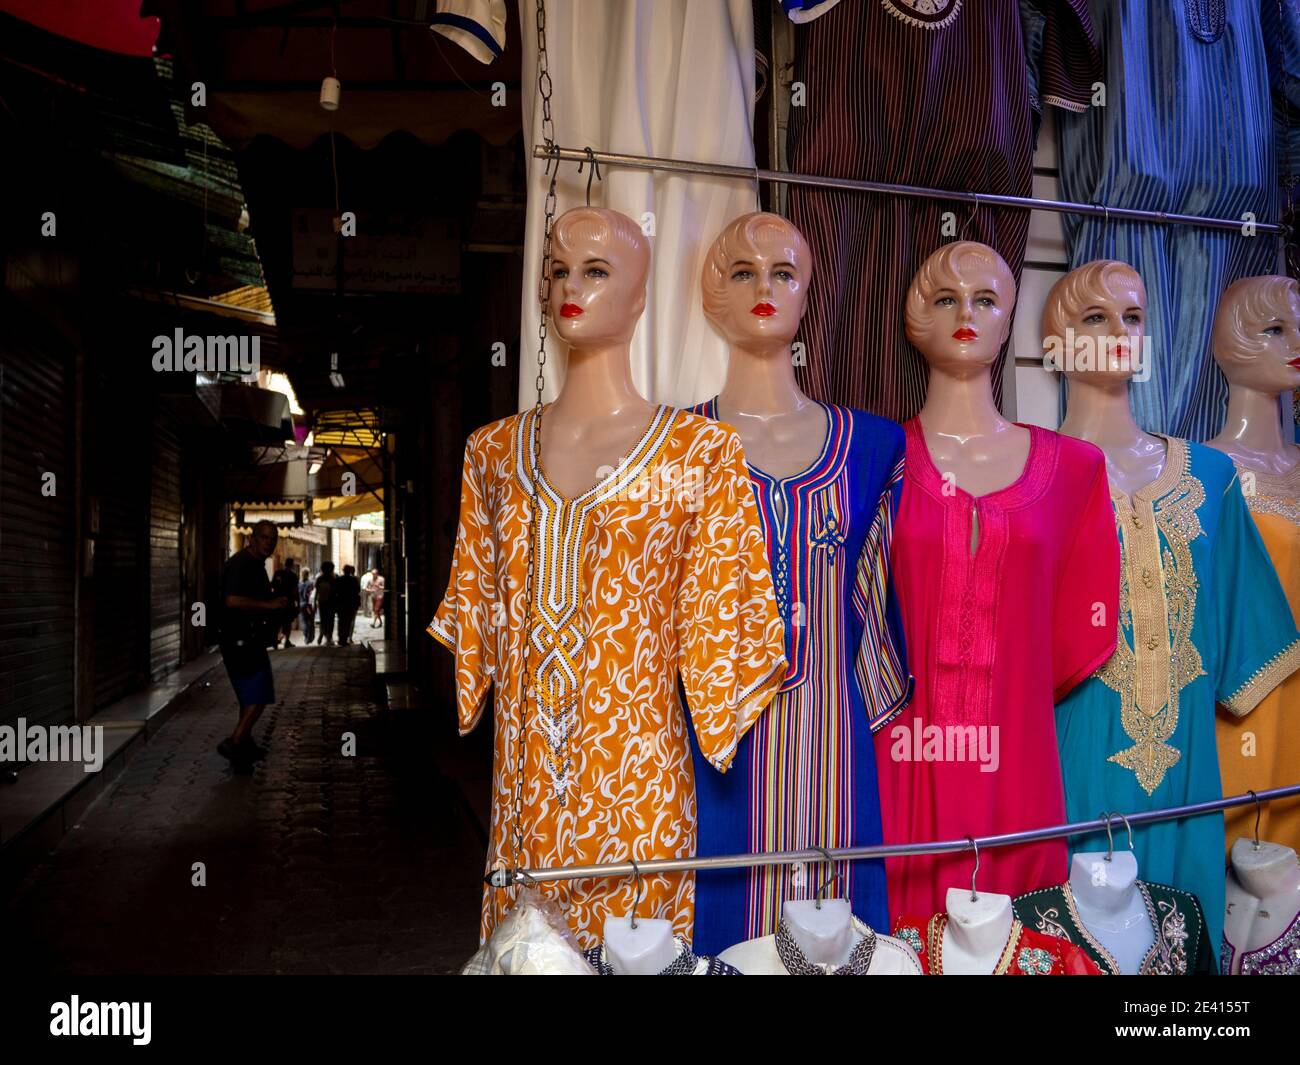 Gruppo di manichini con abiti da donna colorati, all'interno di un mercato arabo in Marocco. Foto Stock